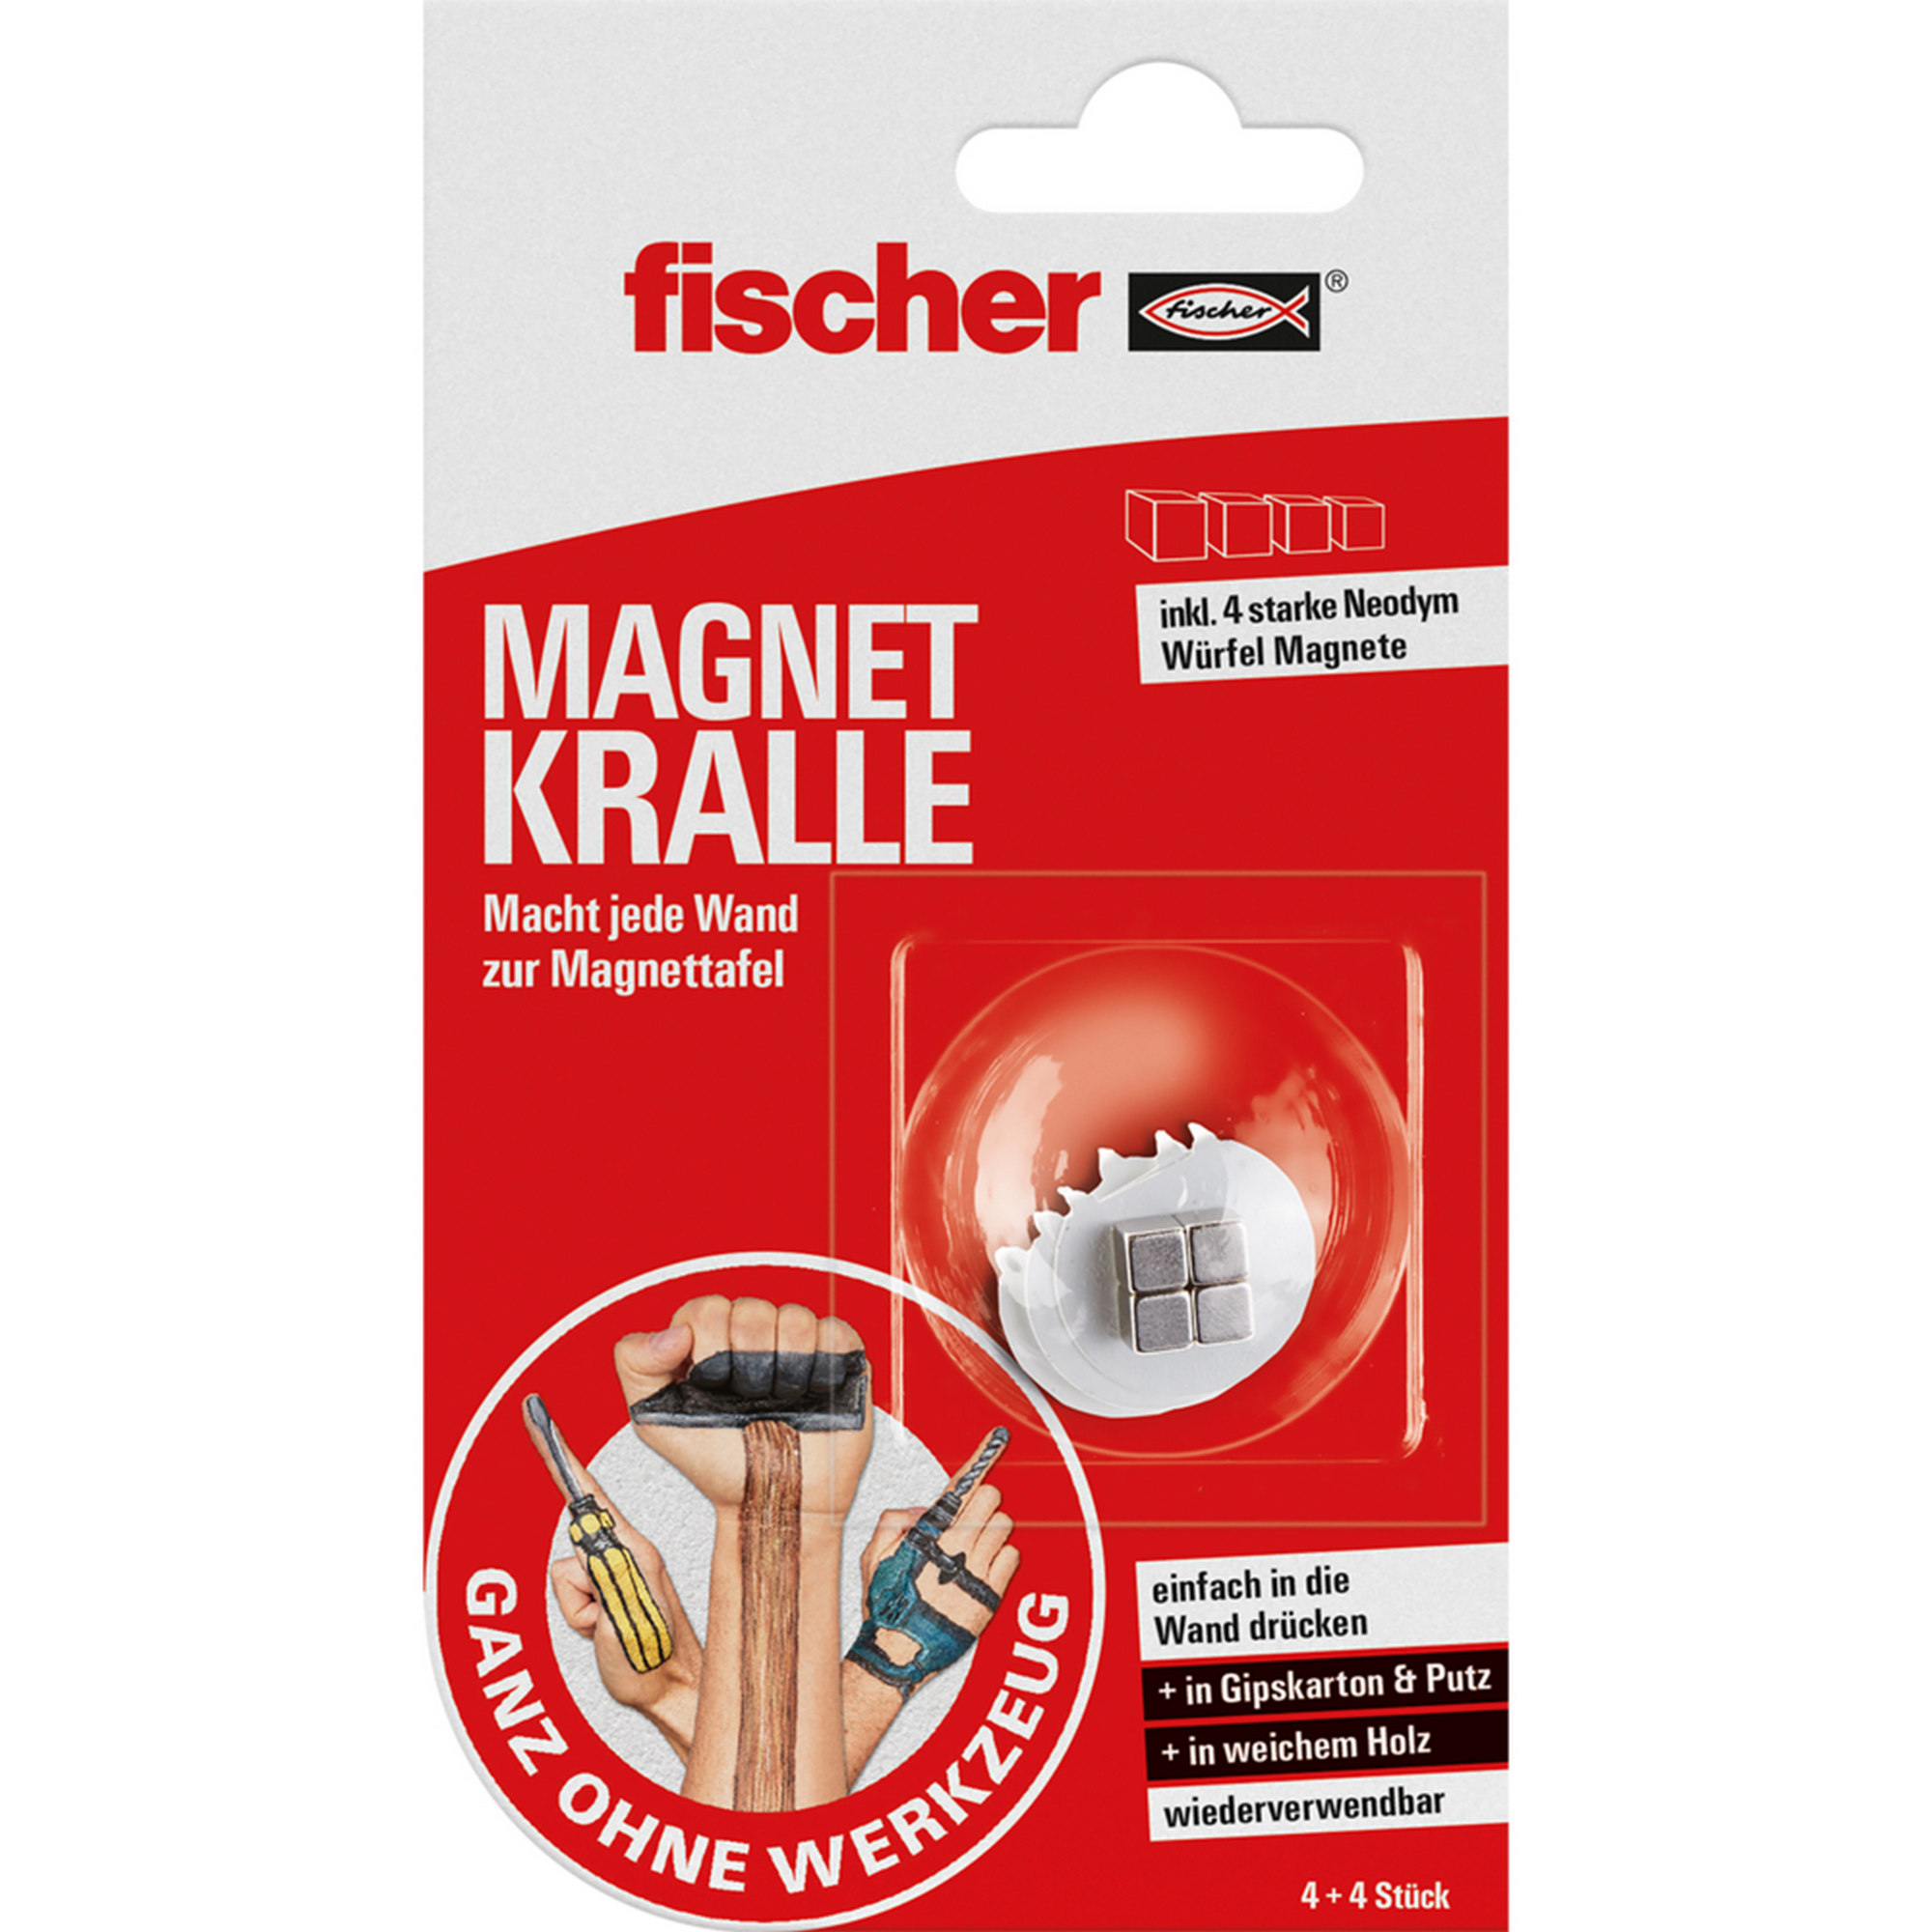 Magnetkralle 'Ganz ohne Werkzeug' 8-teilig + product picture